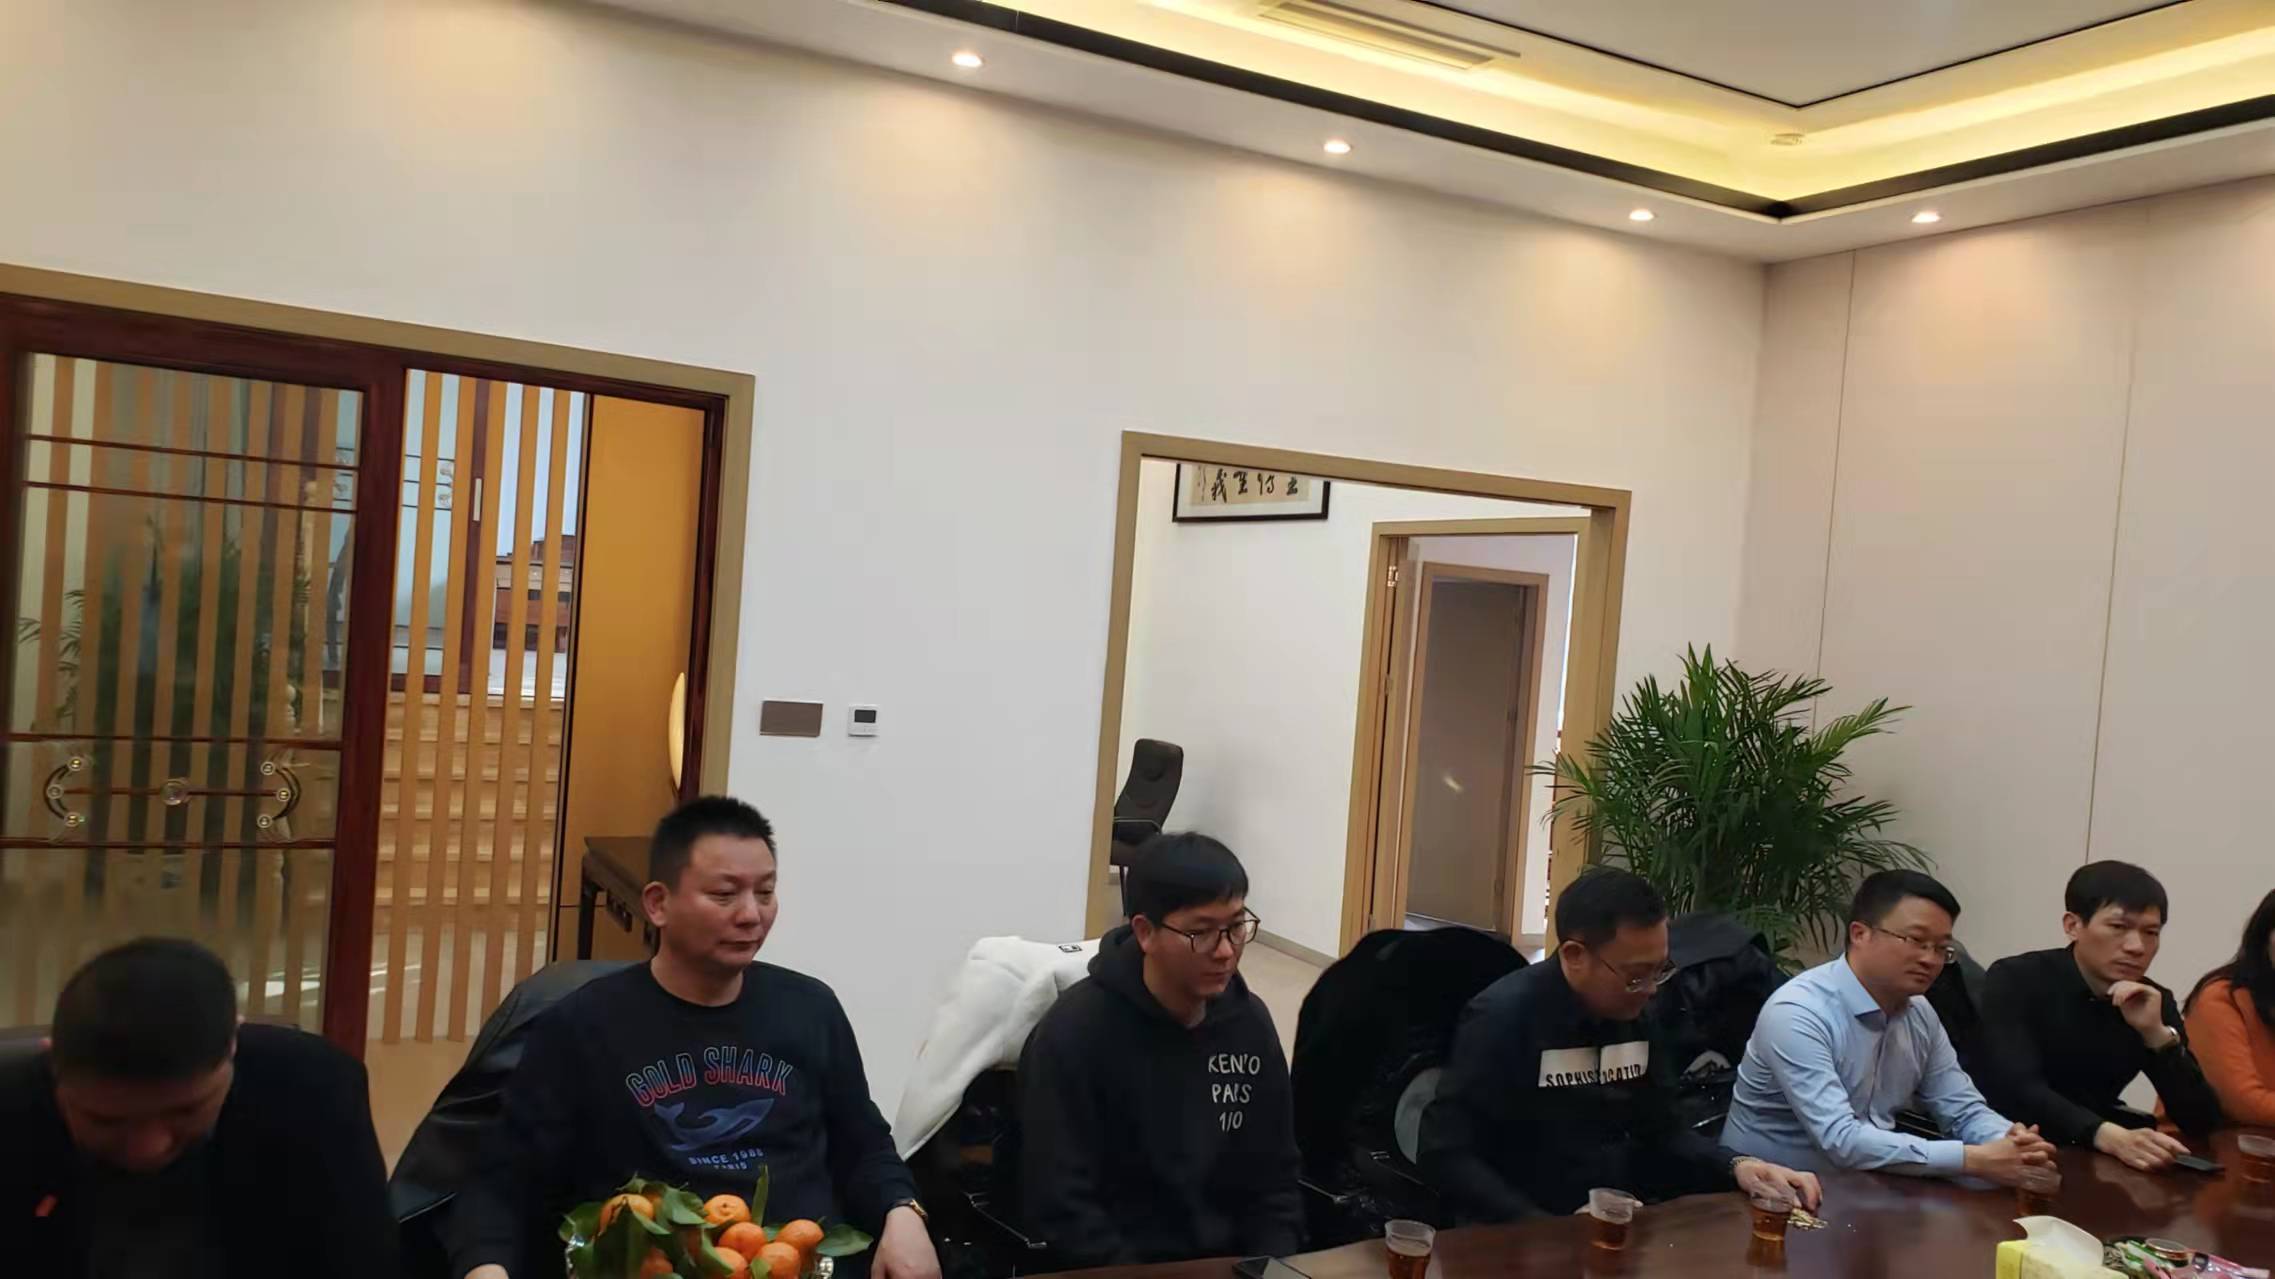 上海庐江商会召开春节后第一次工作会议